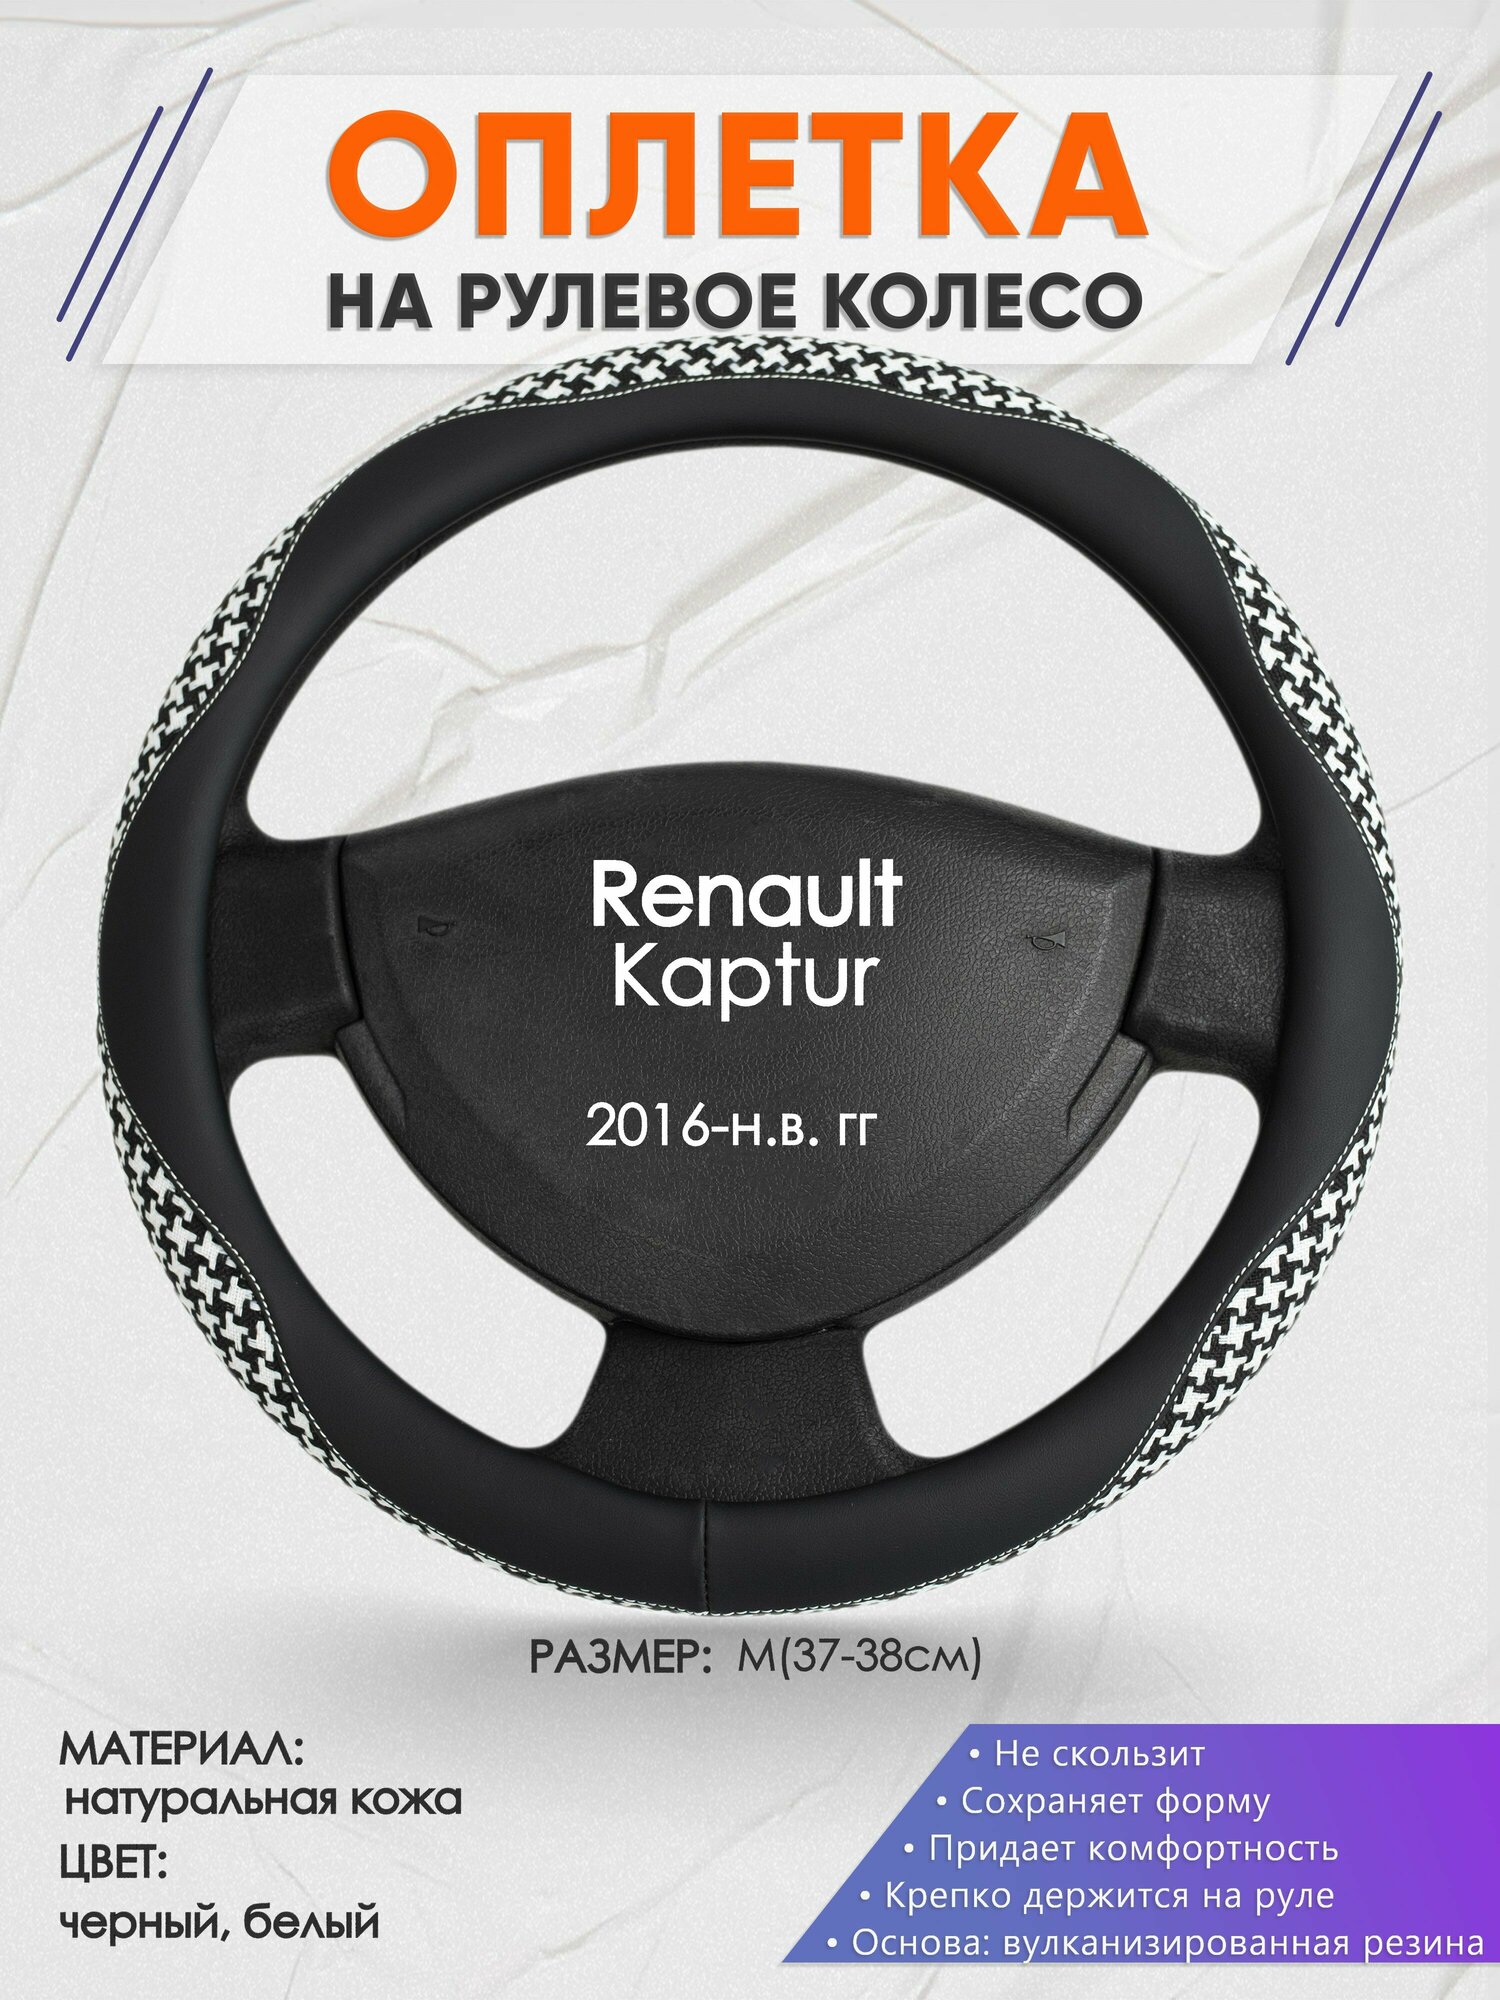 Оплетка на руль для Renault Kaptur (Рено Каптюр) 2016-н. в M(37-38см) Натуральная кожа 91